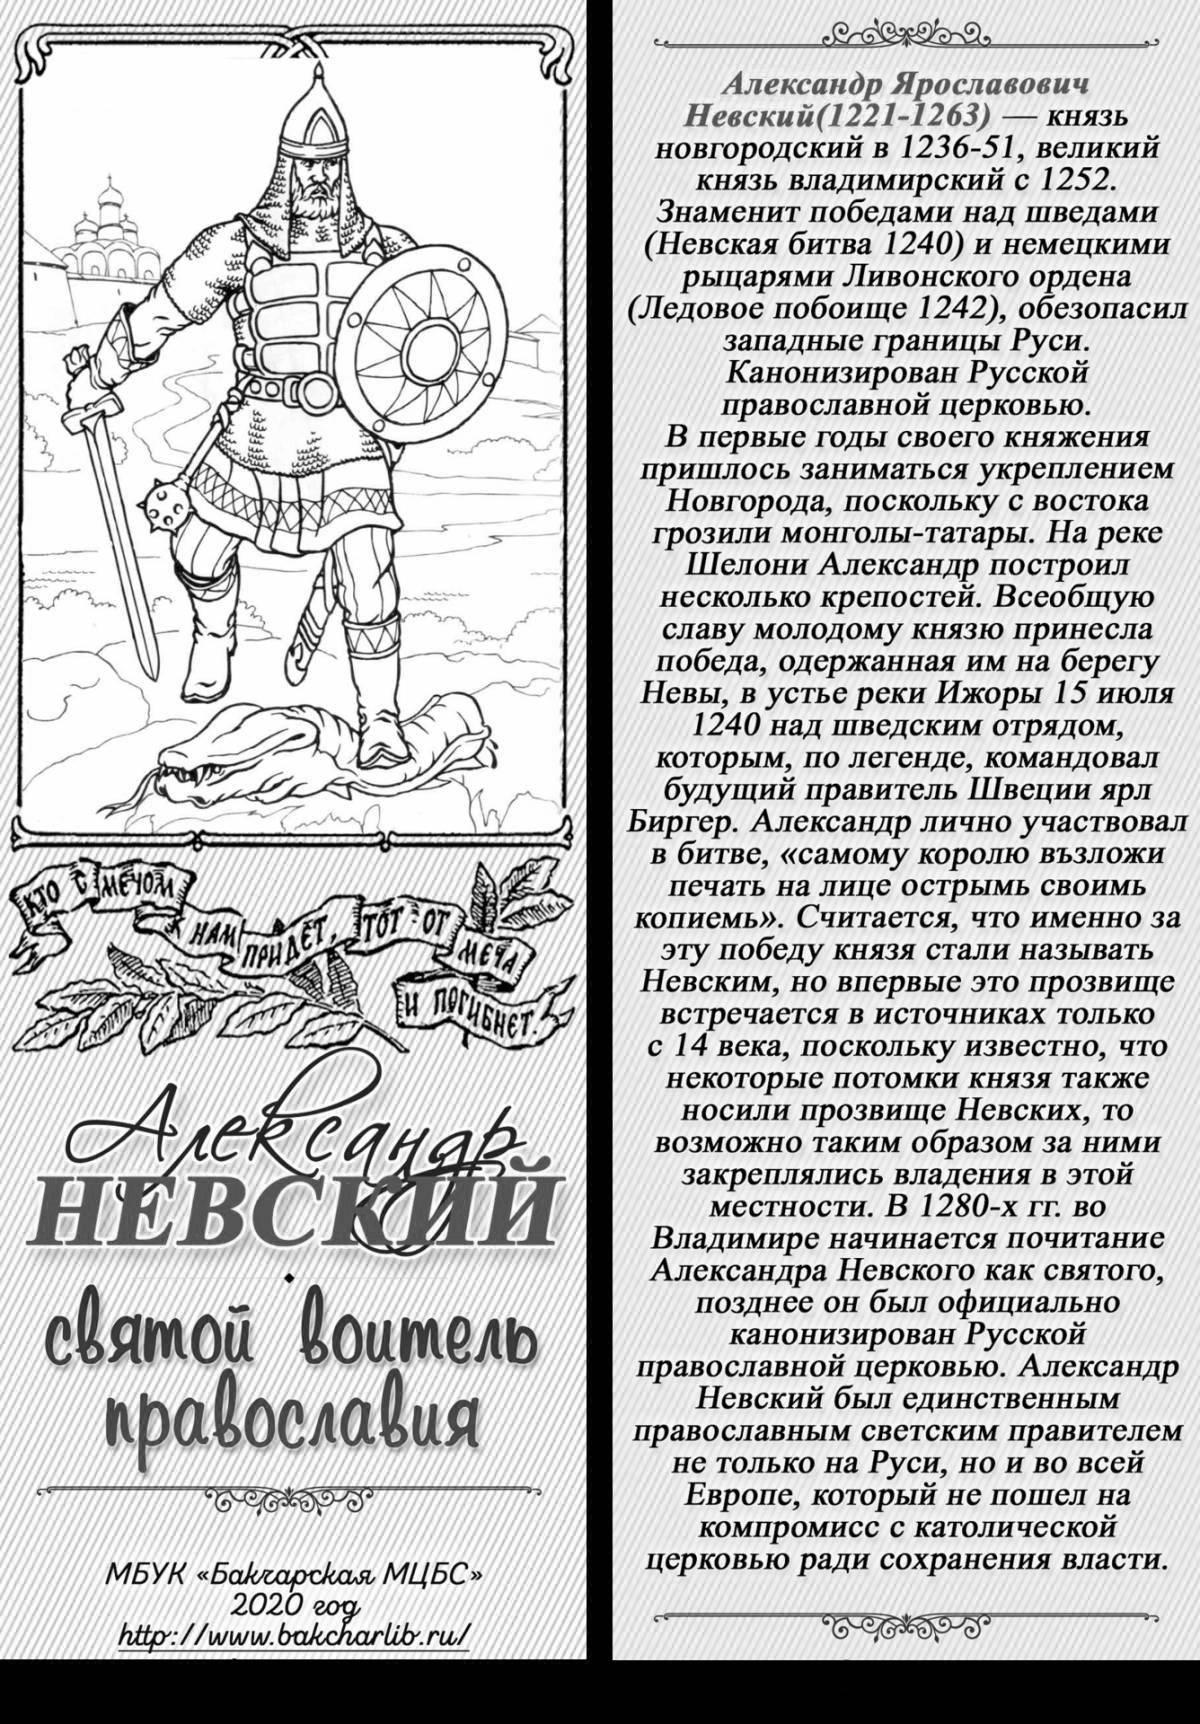 Coloring page royal alexander nevsky